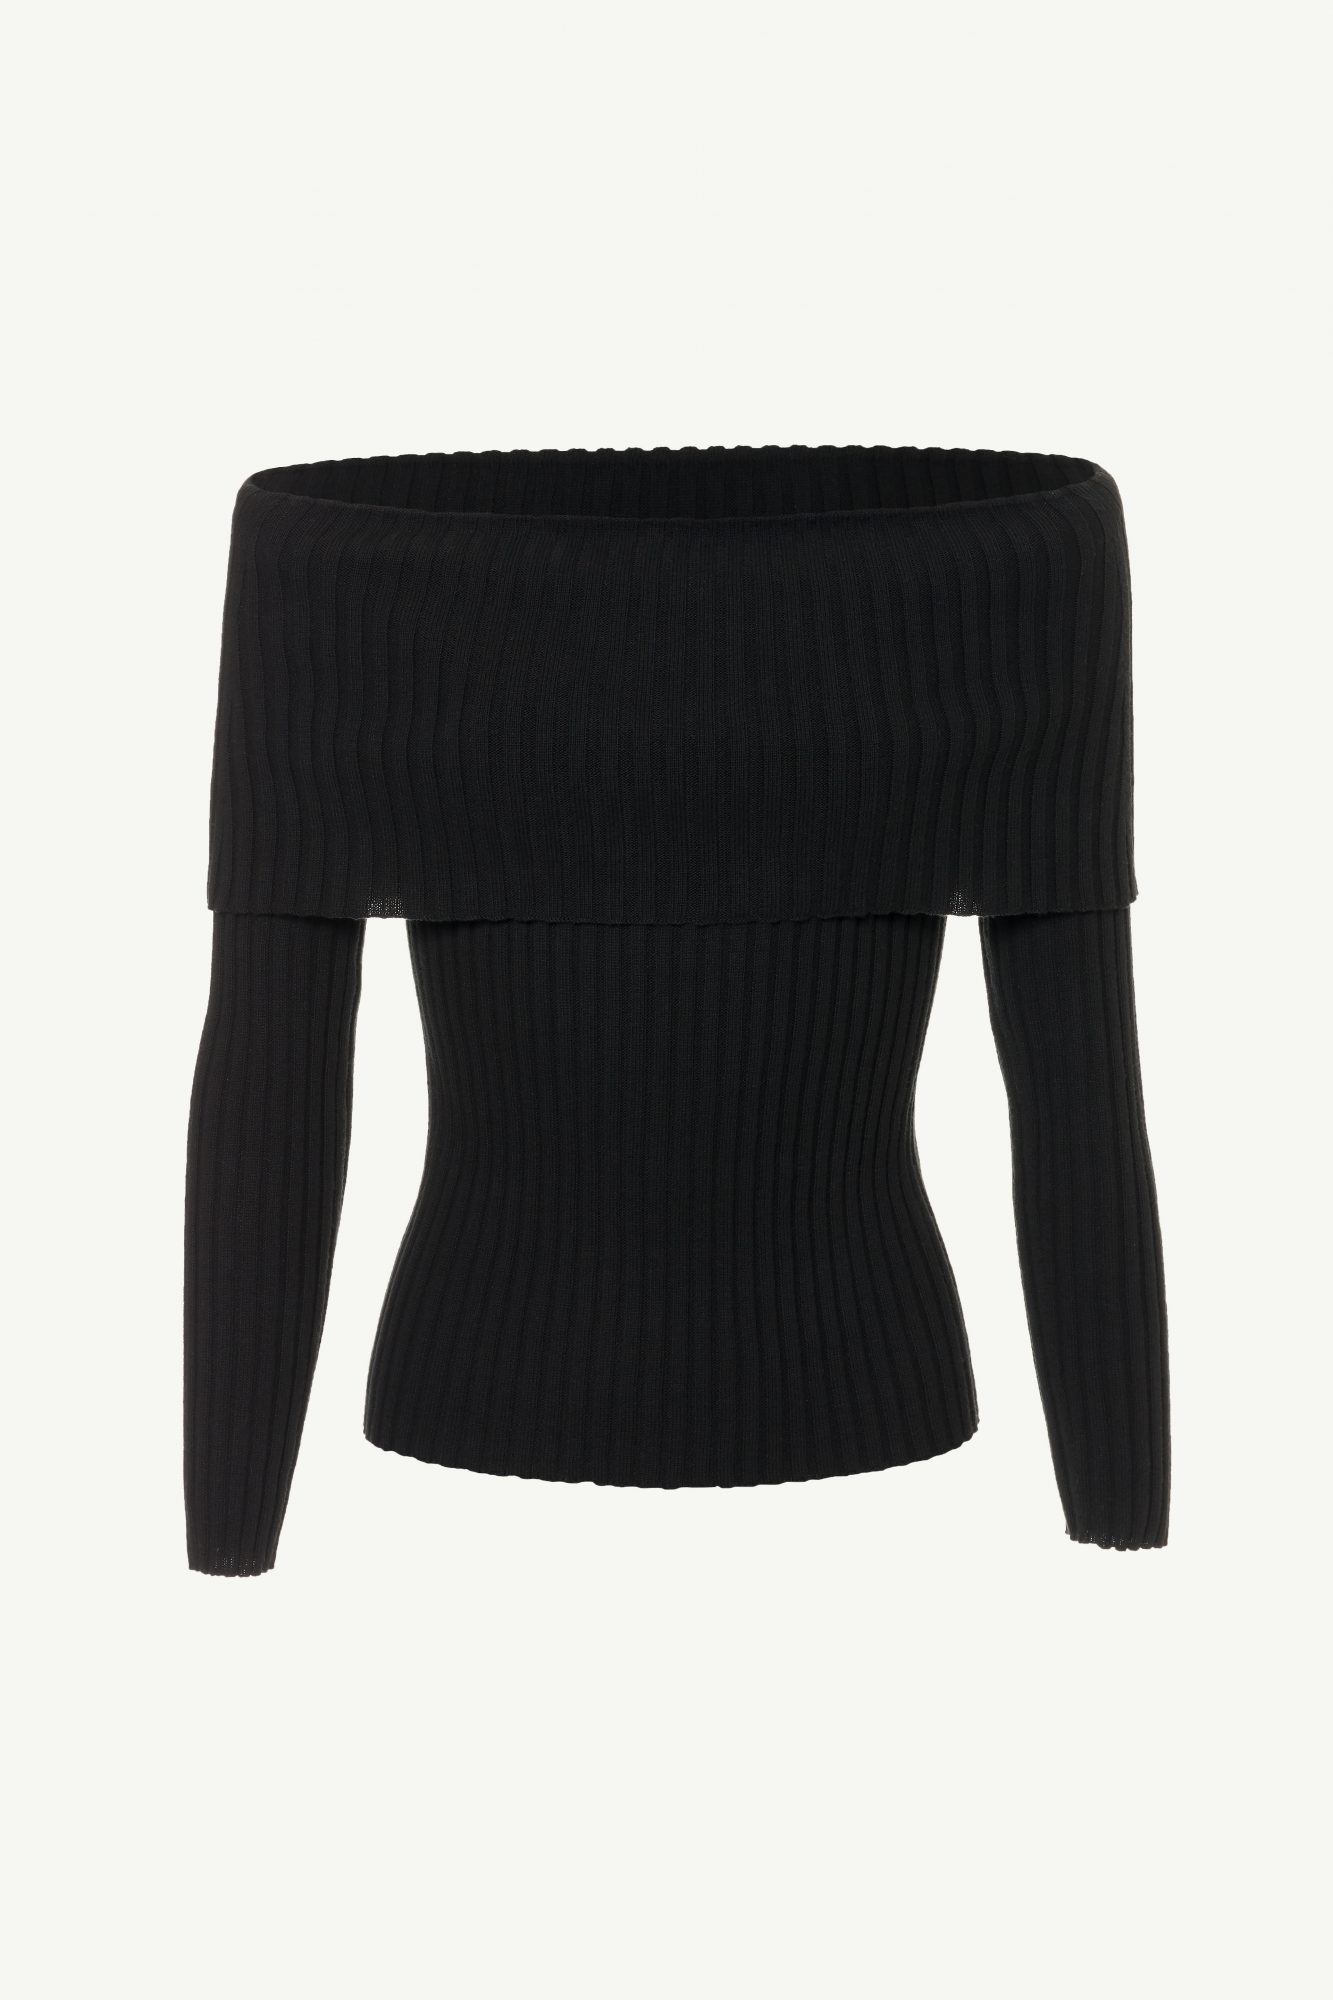 MAGNOLIA SWEATER BLACK - Fiorella Pratto sweaters and cardigans